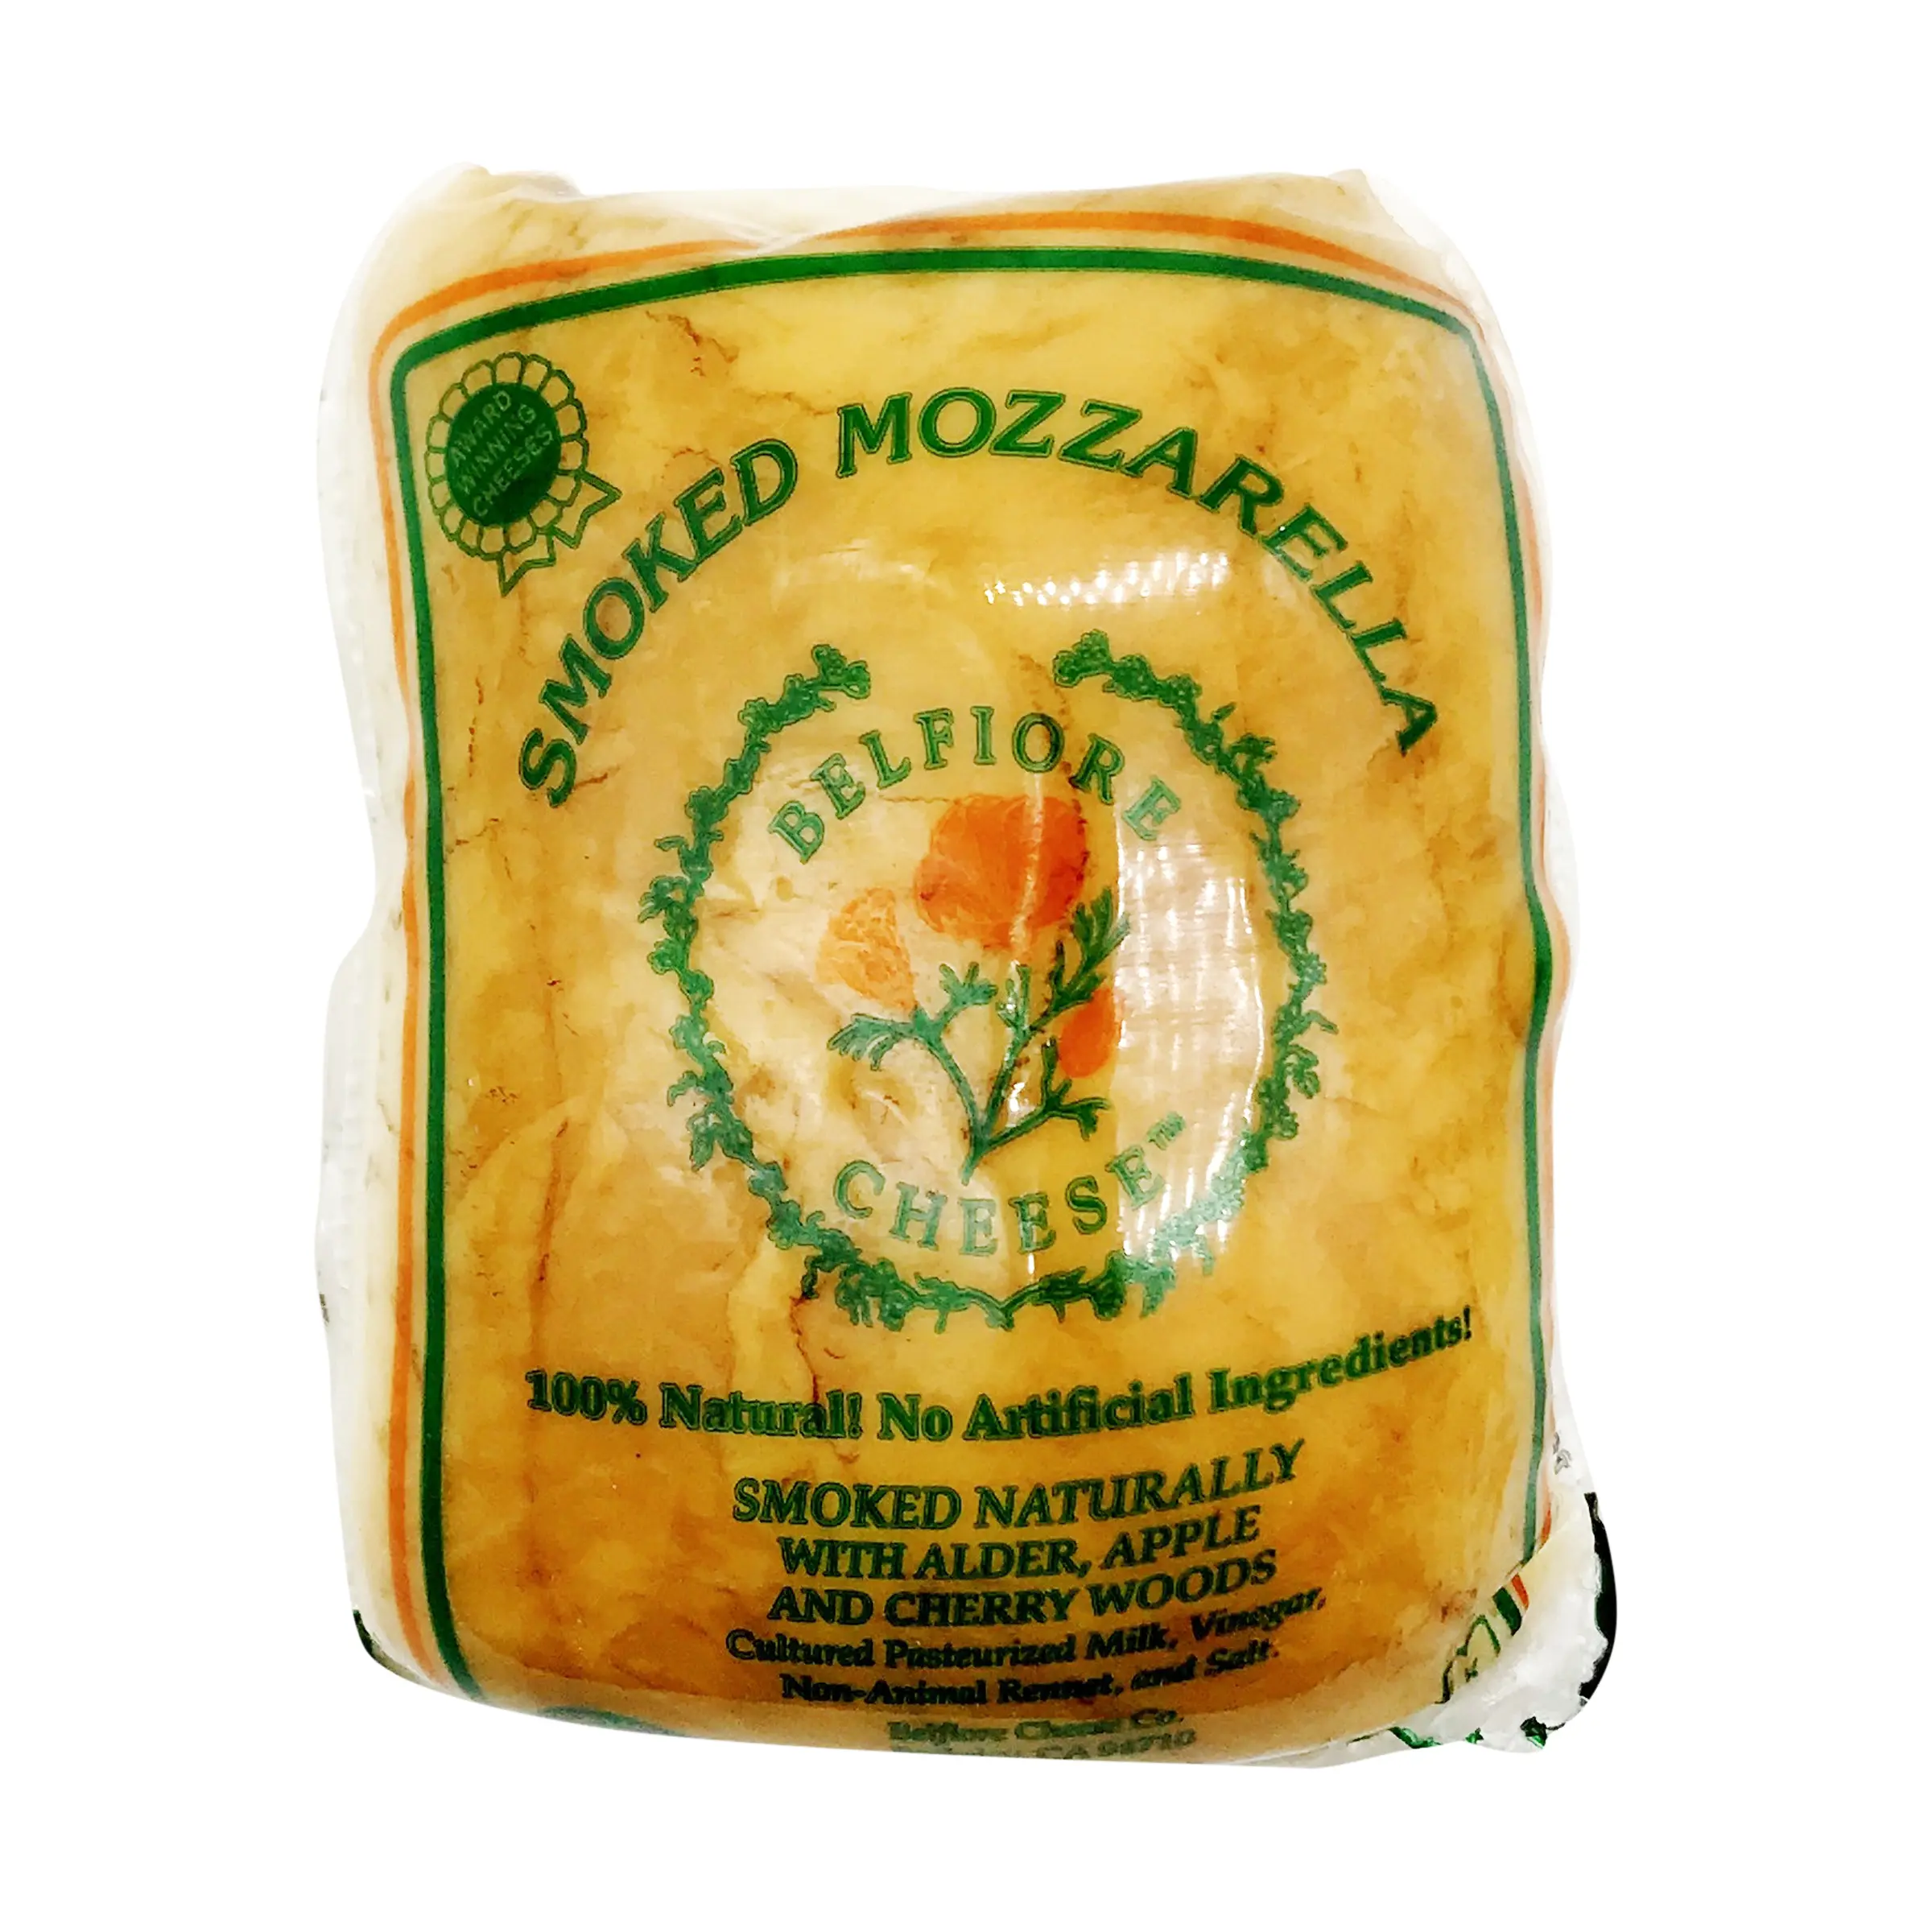 smoked mozzarella - Is scamorza smoked mozzarella